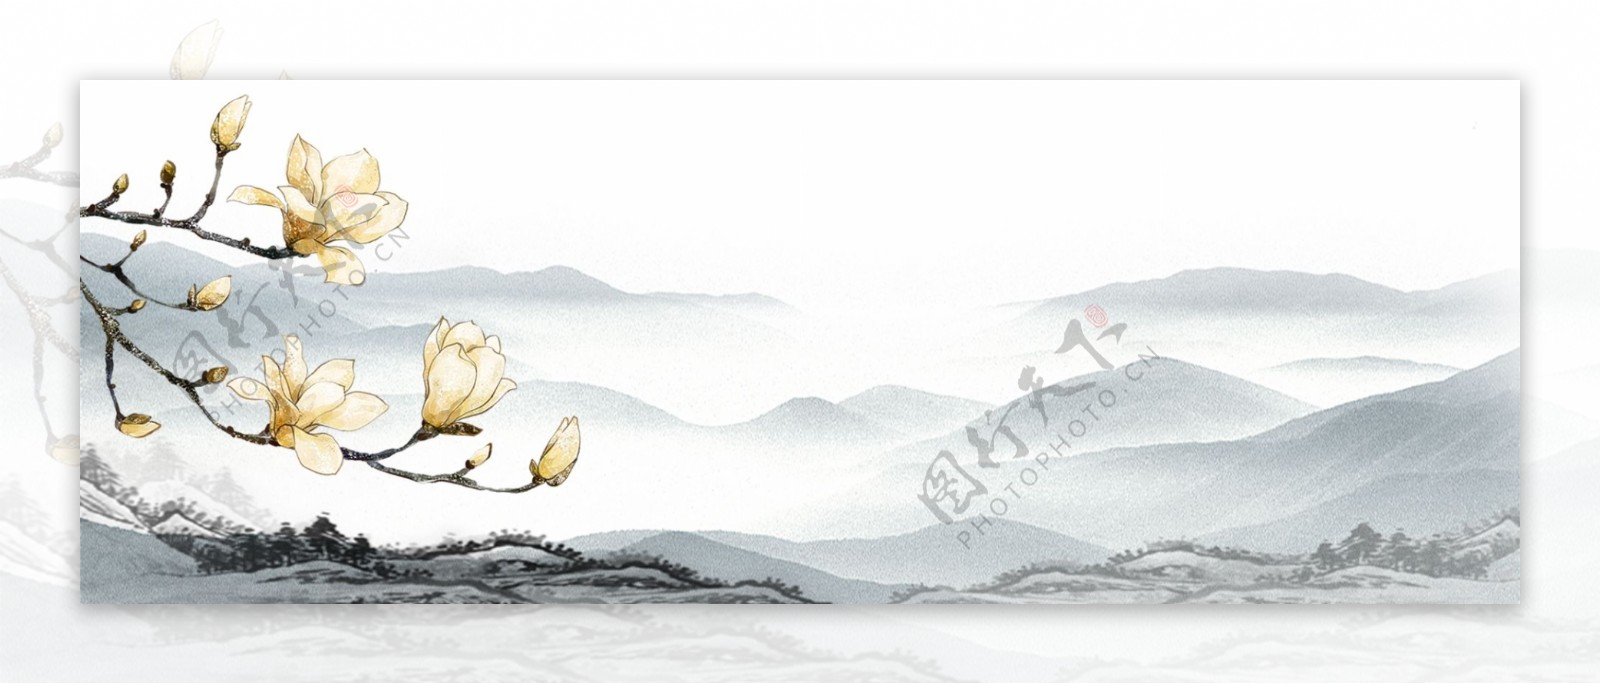 古典中国风意境水墨风景山水背景